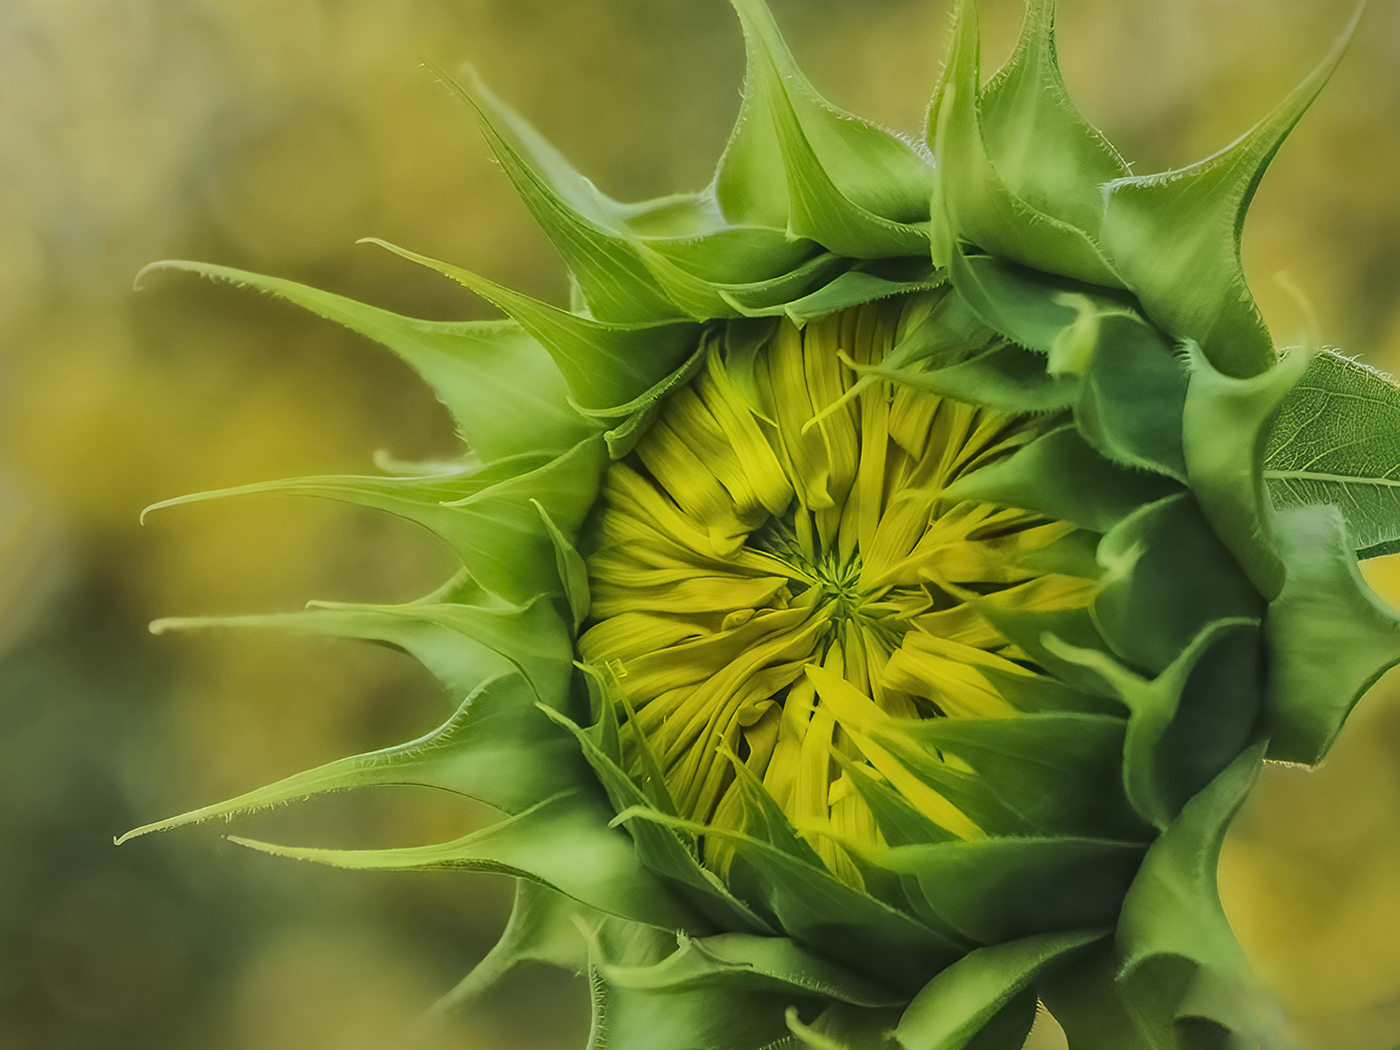 Sunflower by Lori Azevedo